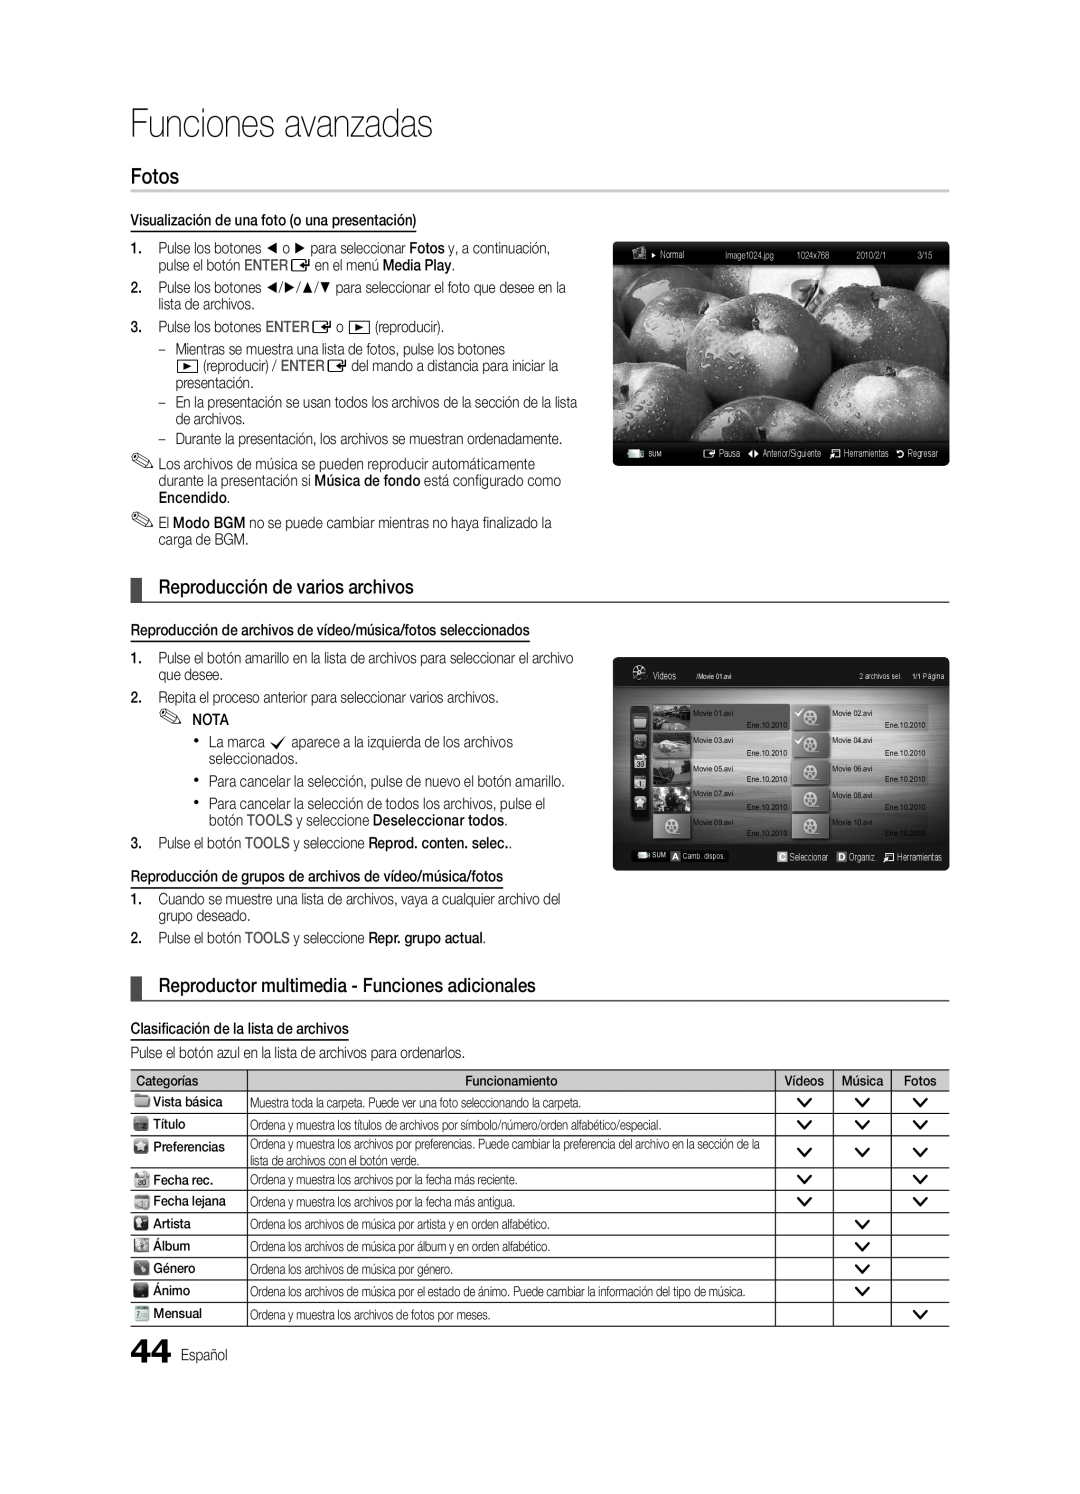 Samsung BN68-03088A-01, Series C9 Fotos, Reproducción de varios archivos, Reproductor multimedia - Funciones adicionales 